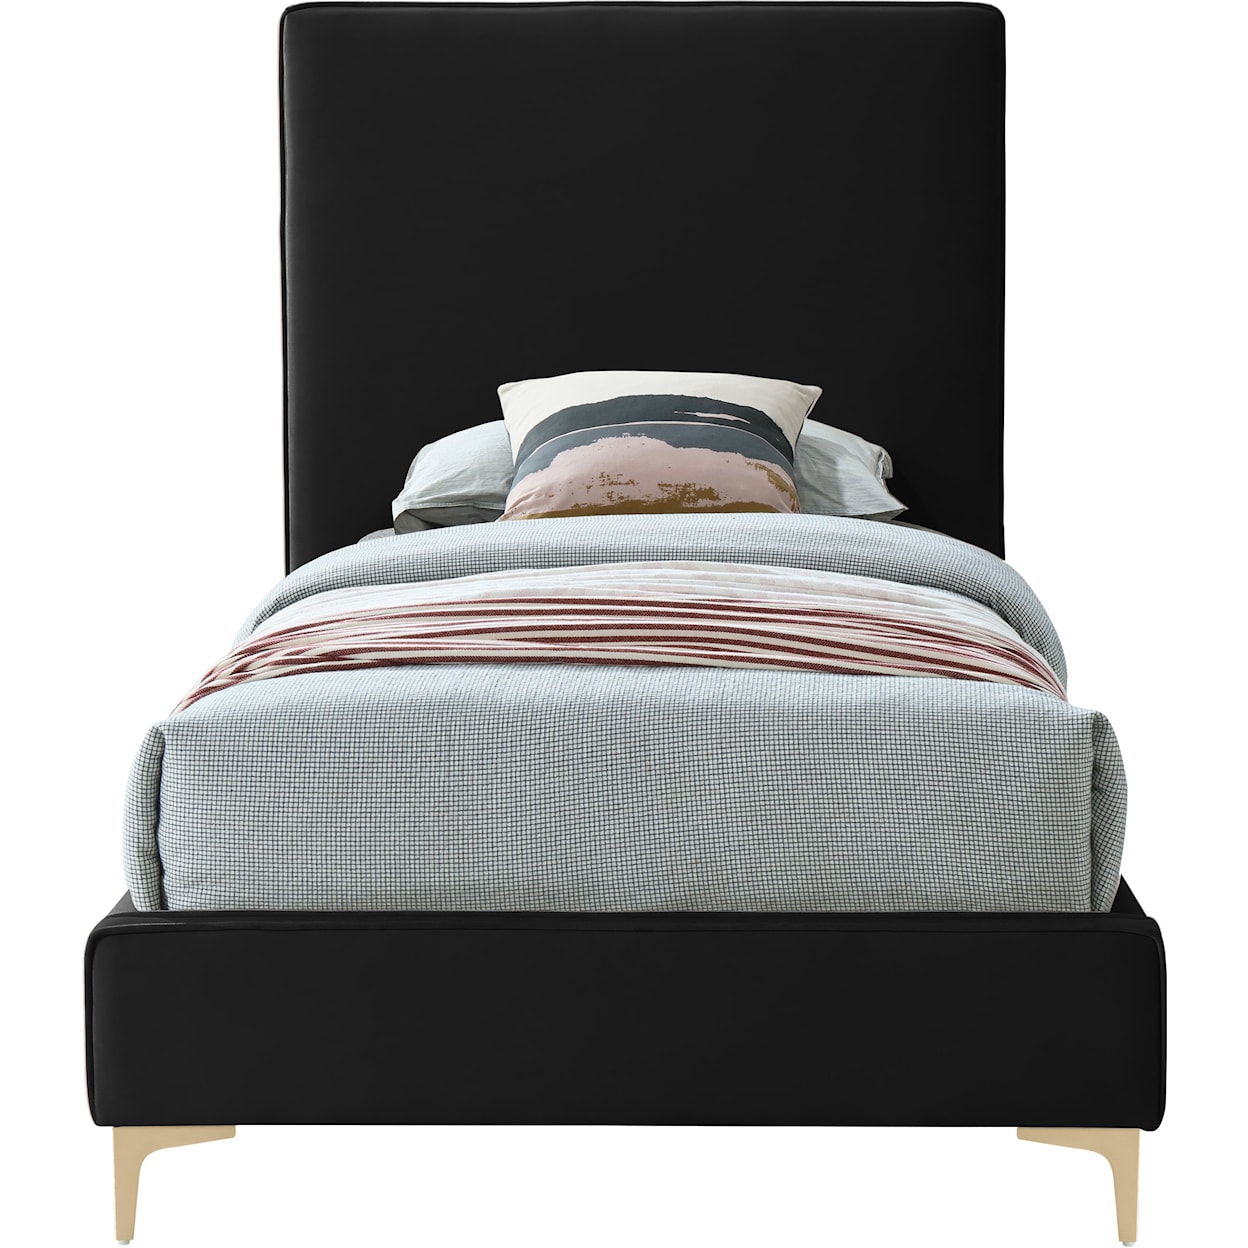 Meridian Furniture Geri Twin Bed